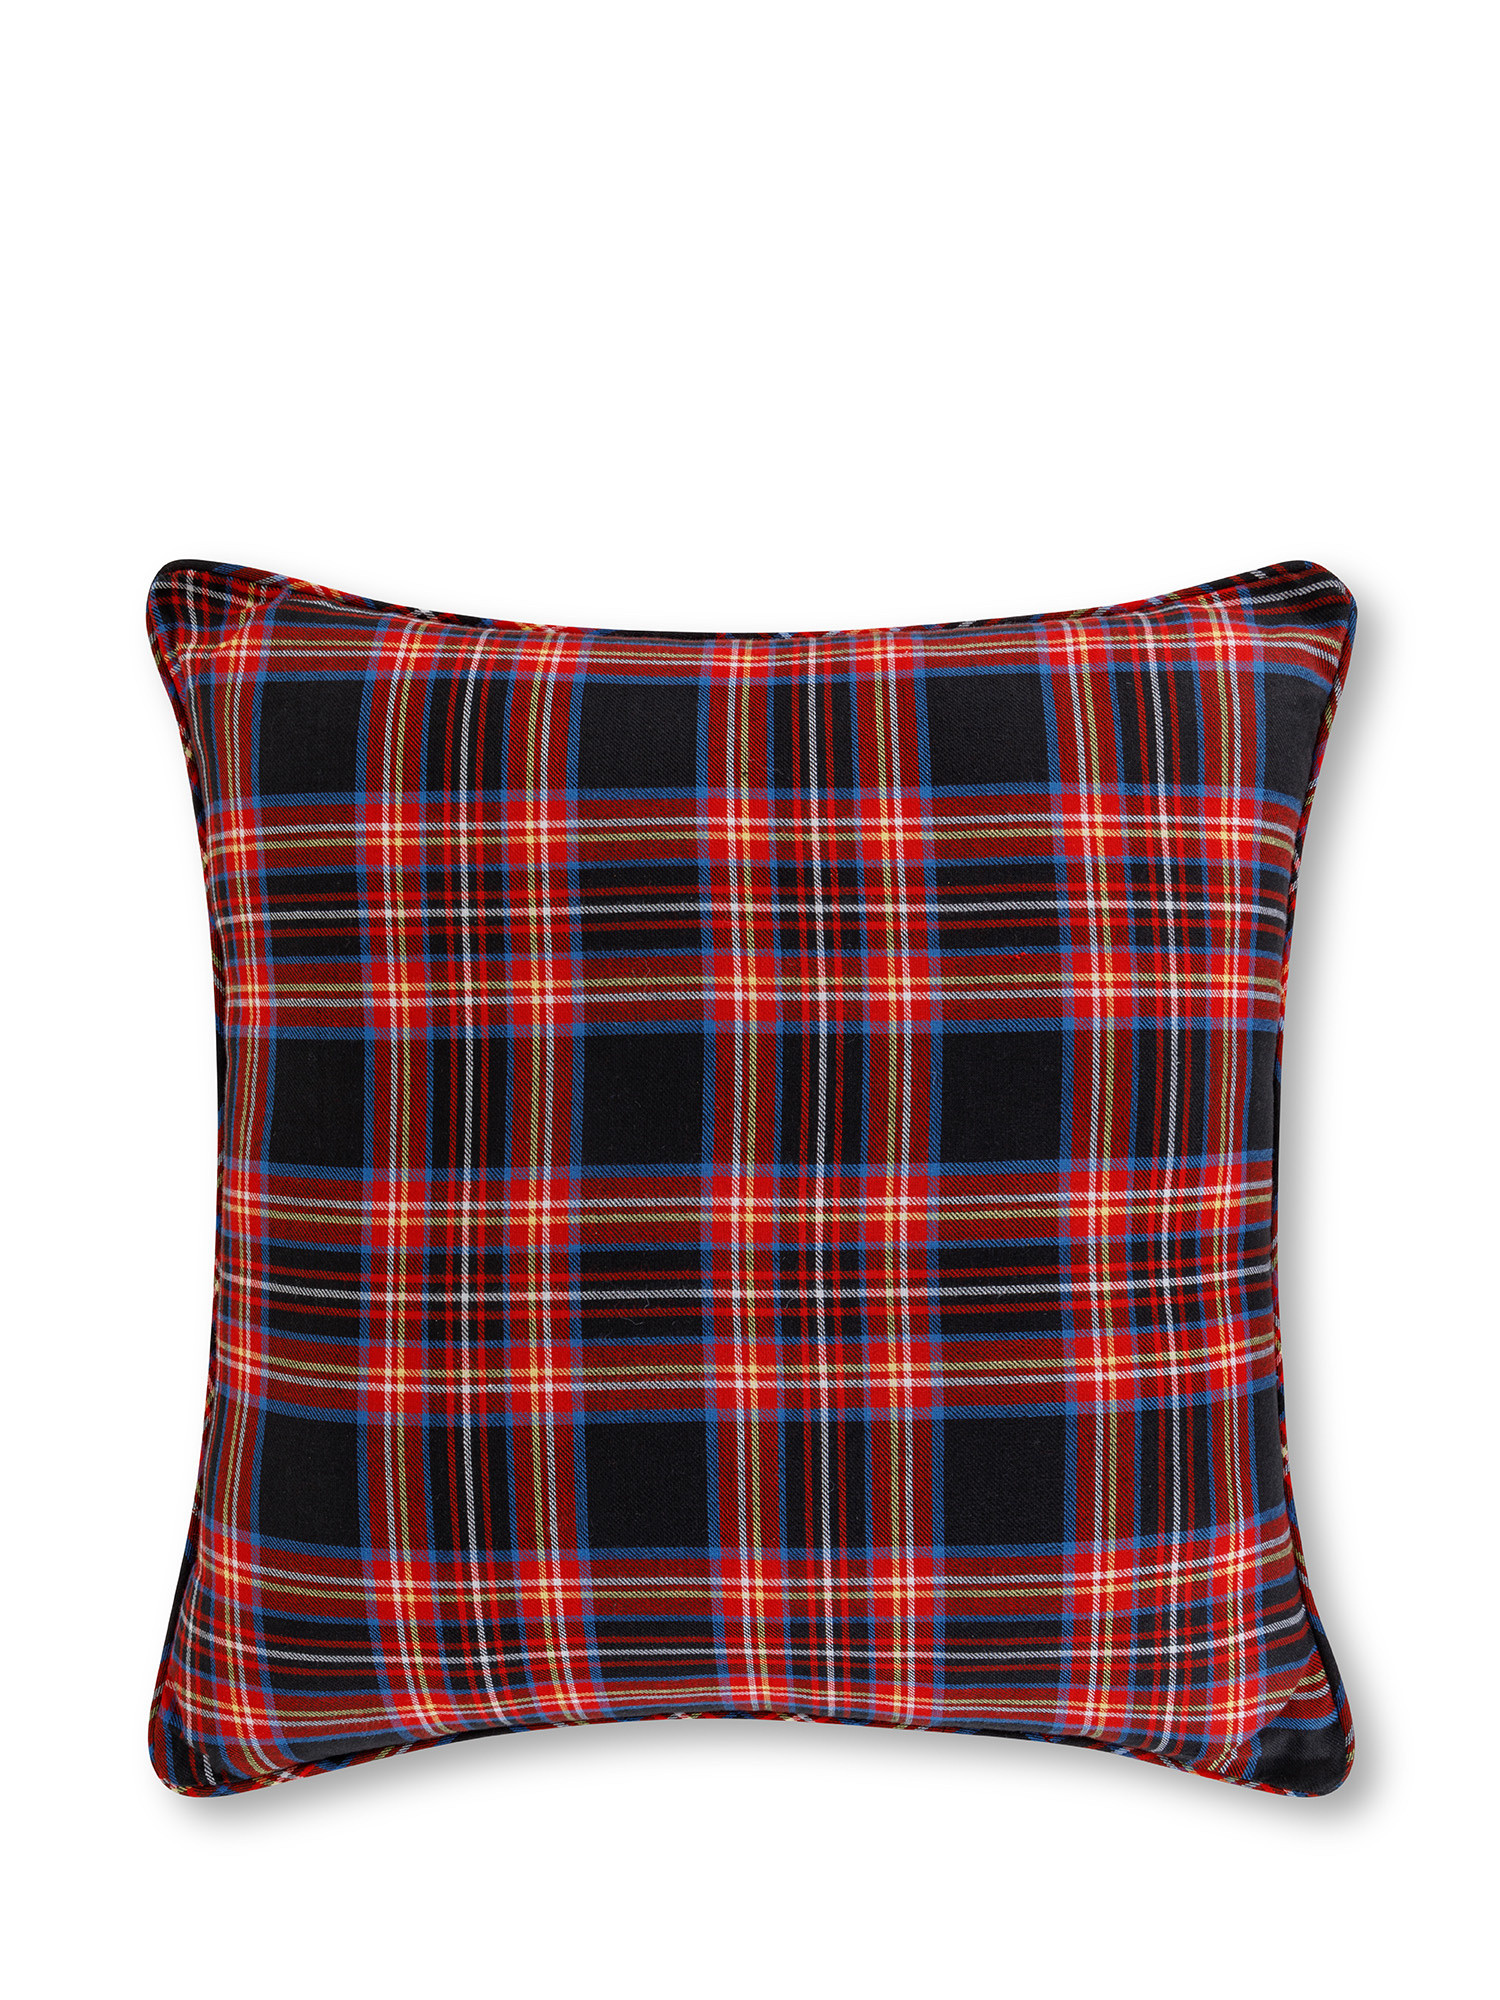 Warm tartan cotton pillow, Black, large image number 0